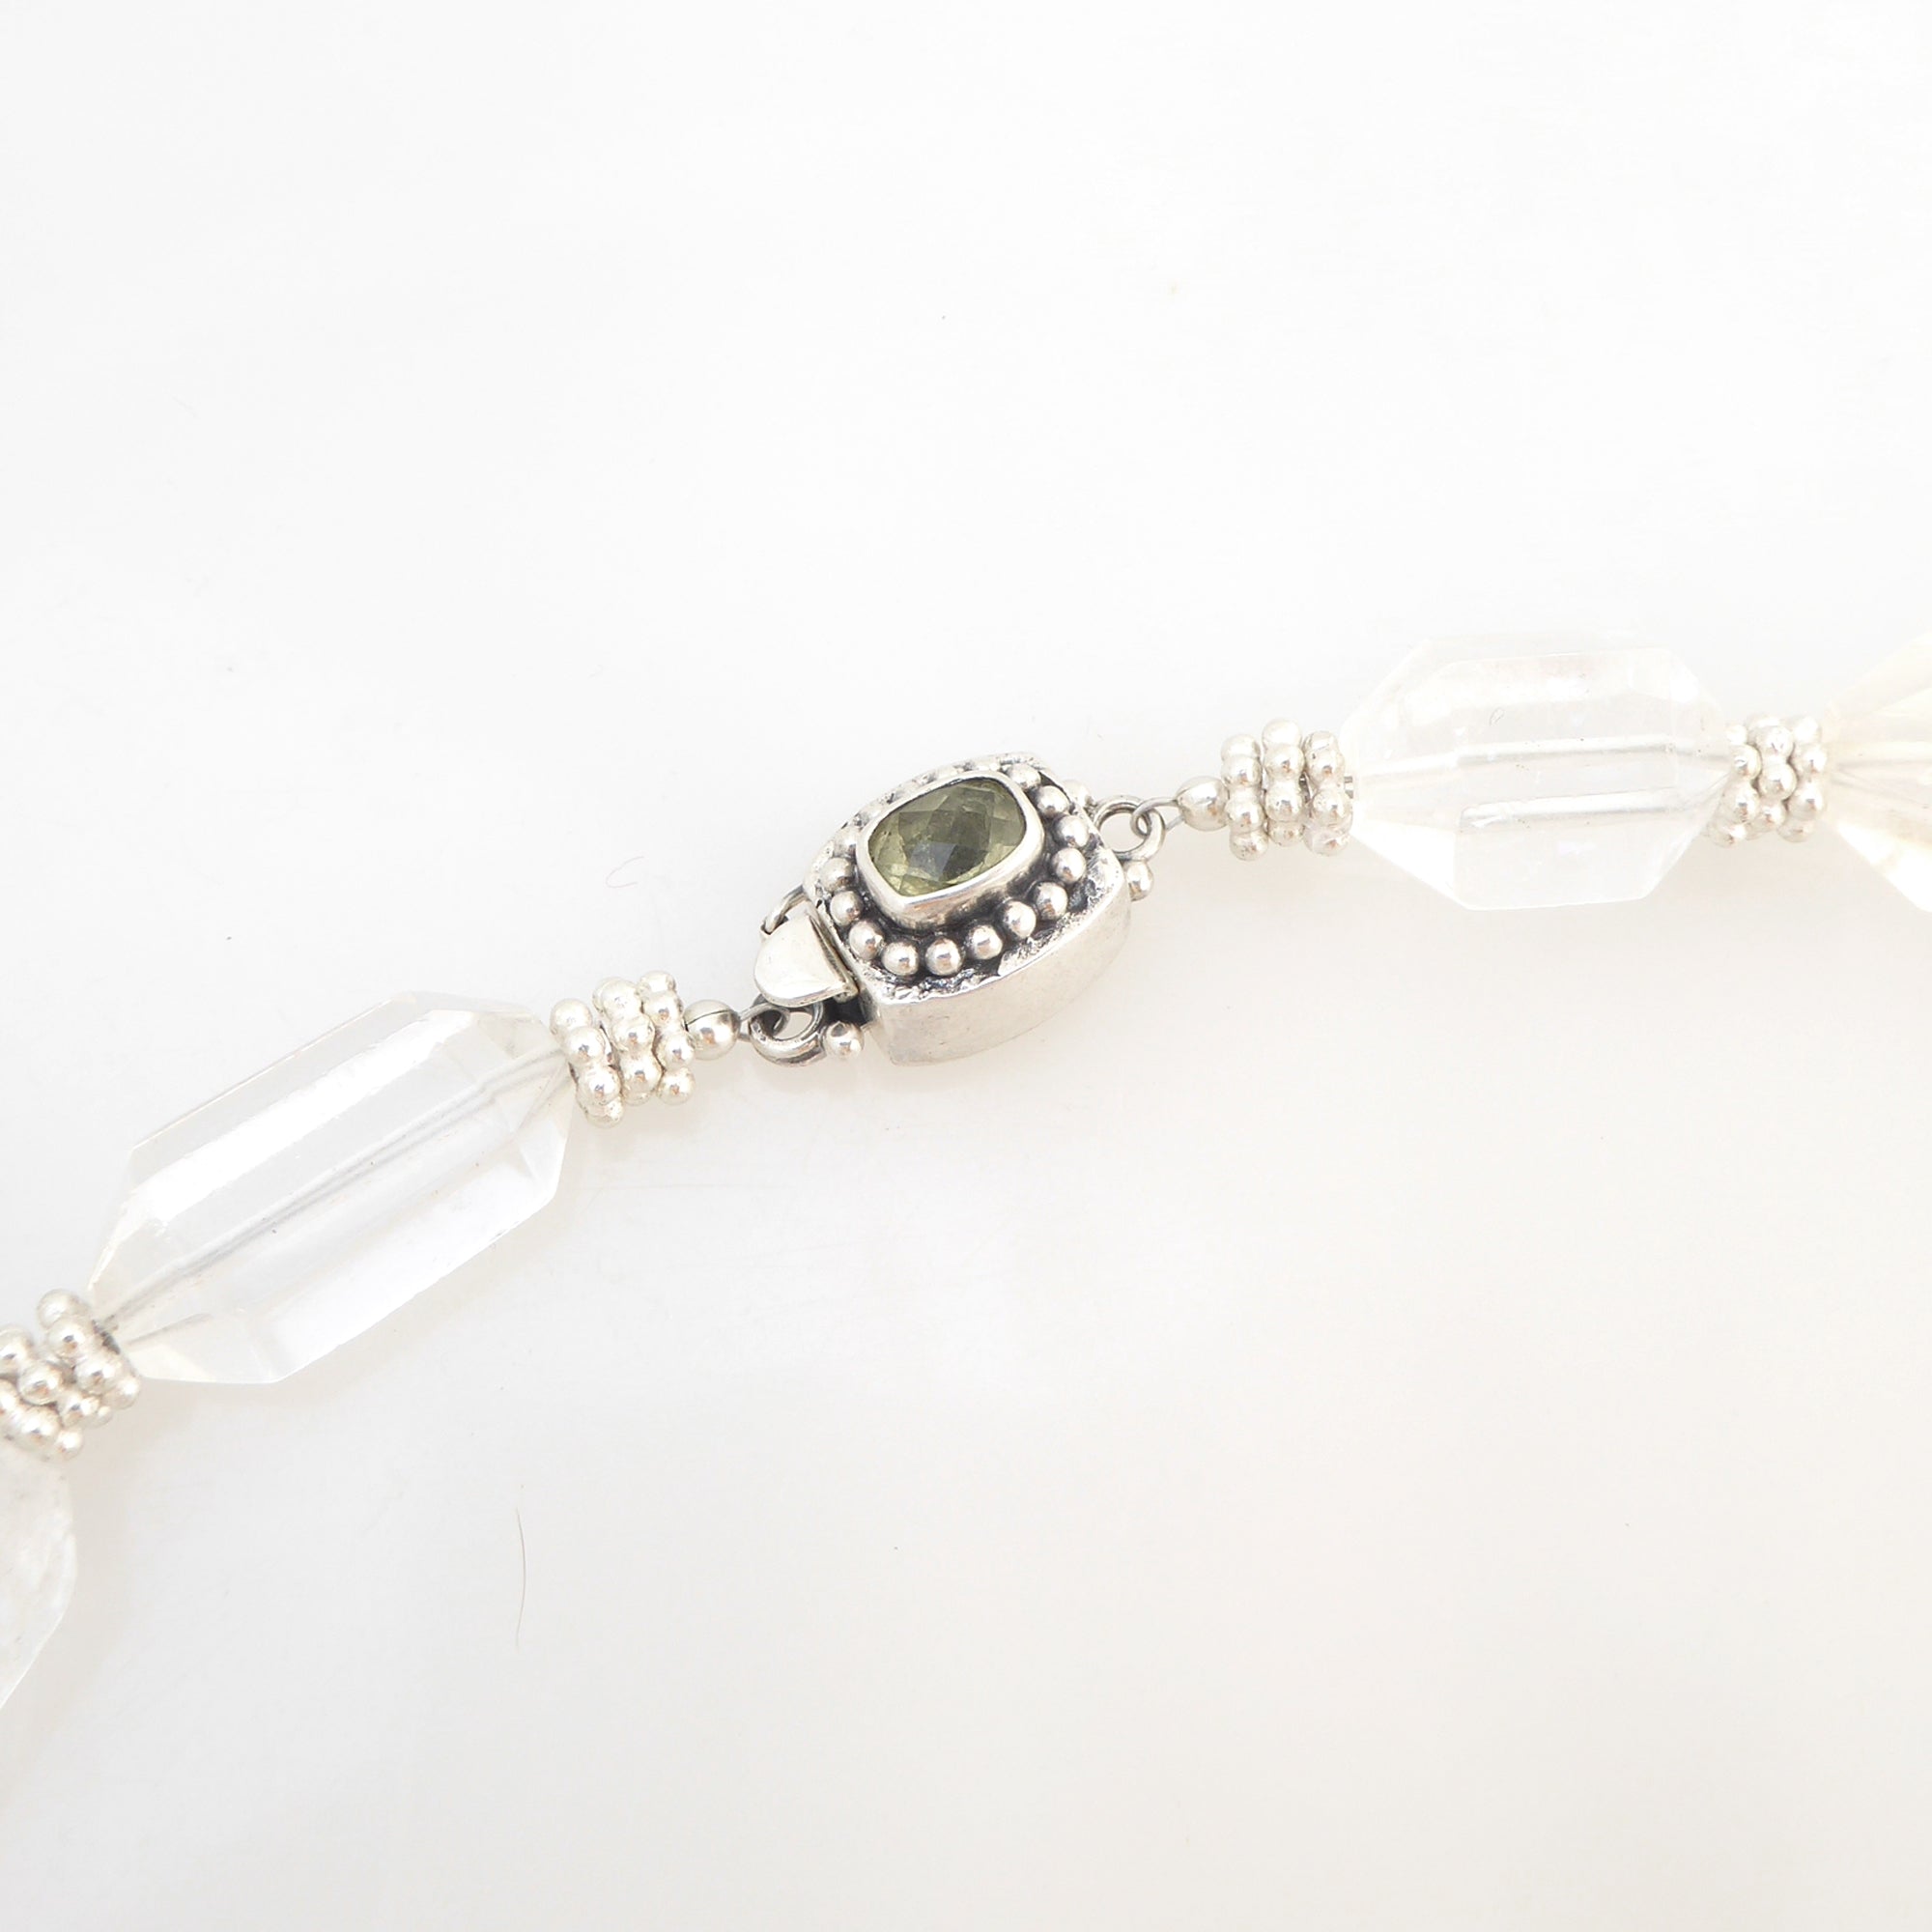 Green quartz star necklace by Jenny Dayco 6